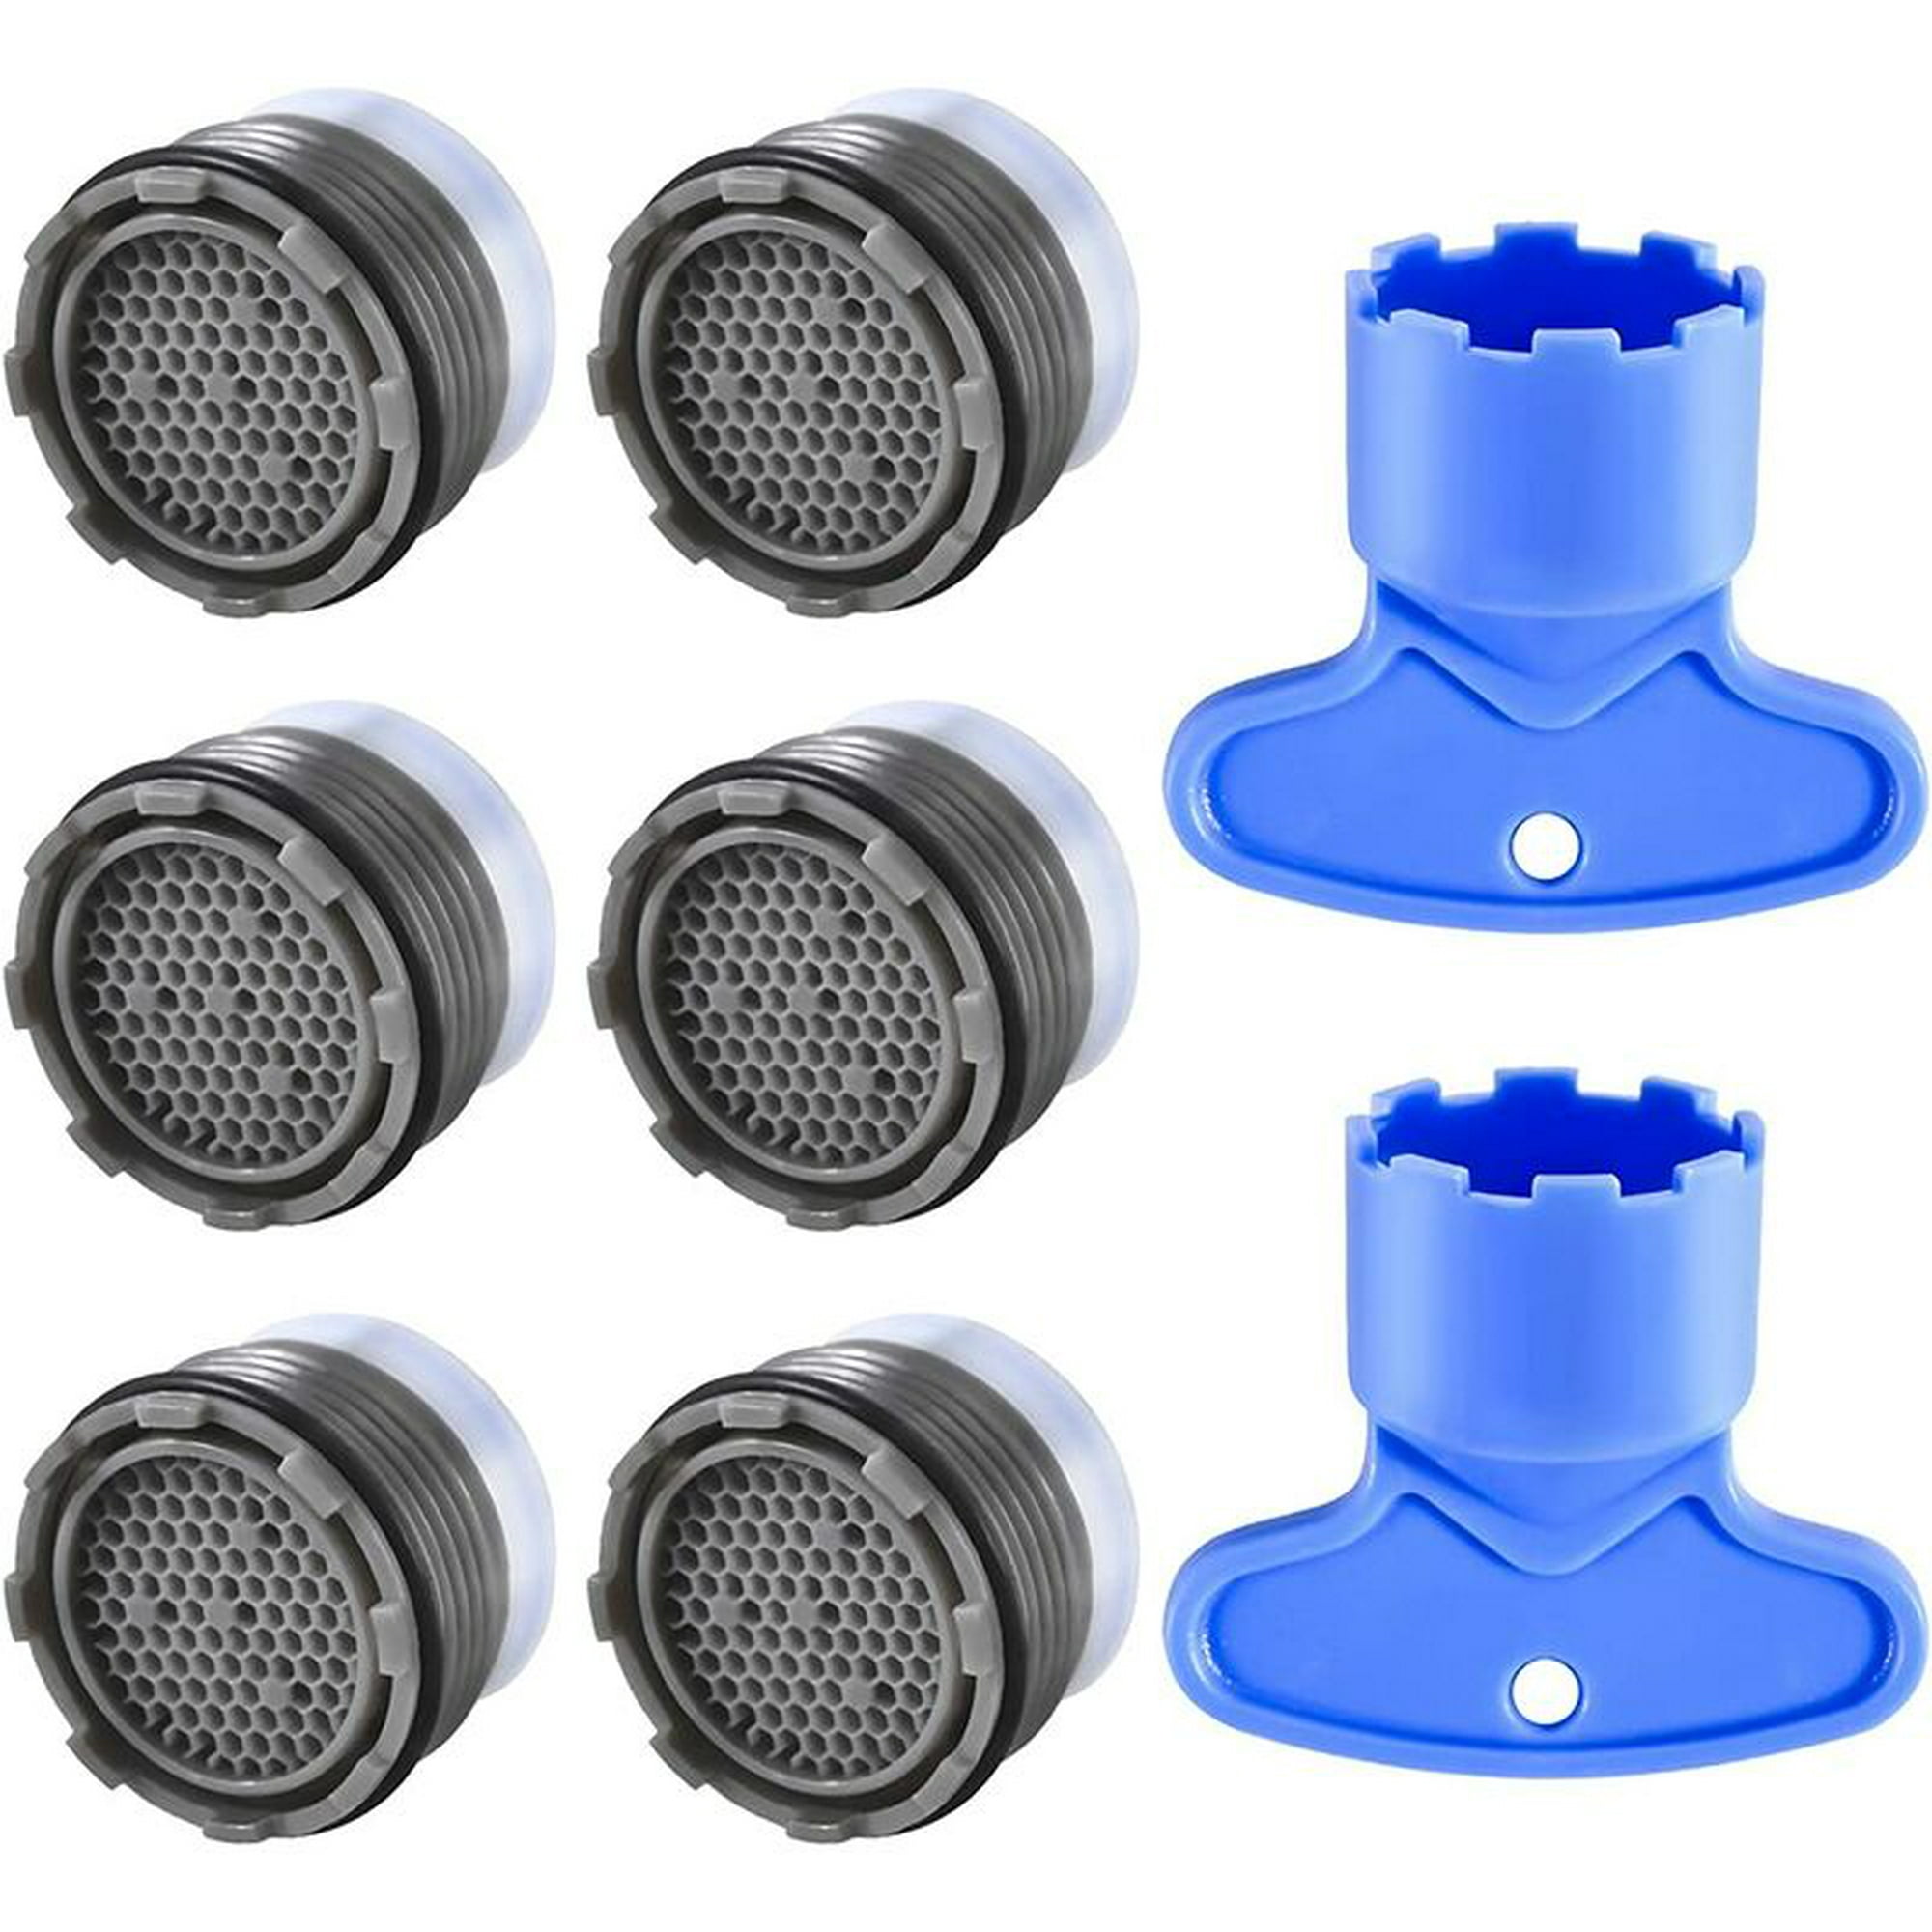 uxcell M18 Aireadores de grifo universal hembra grifo aireador boquilla  pieza de repuesto para baño lavabo cocina fregadero grifo bidé